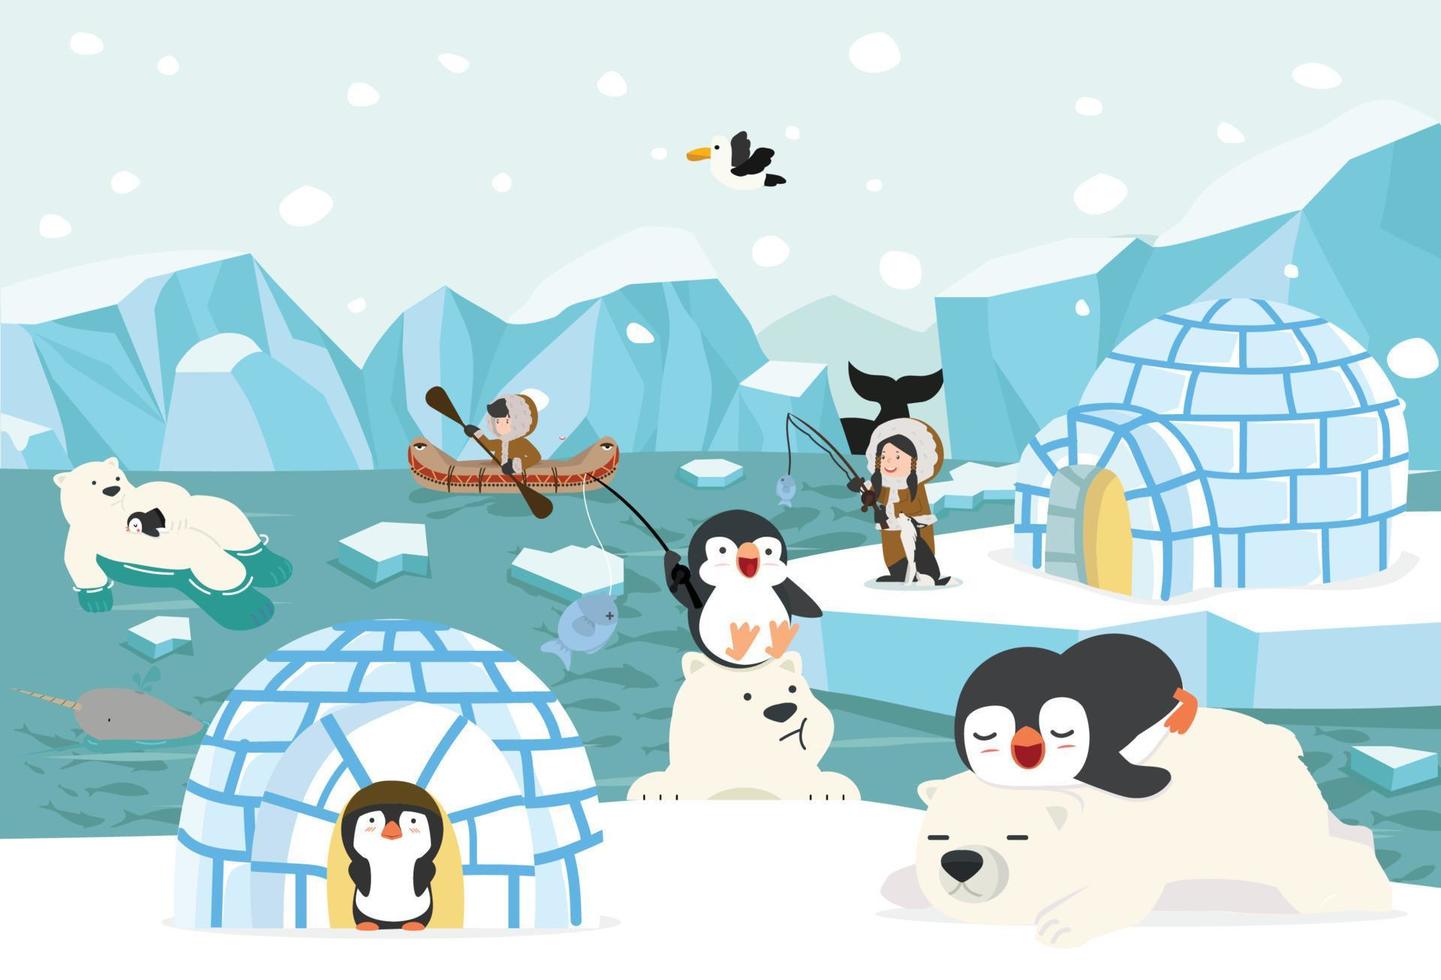 dibujos animados del ártico del polo norte de invierno vector